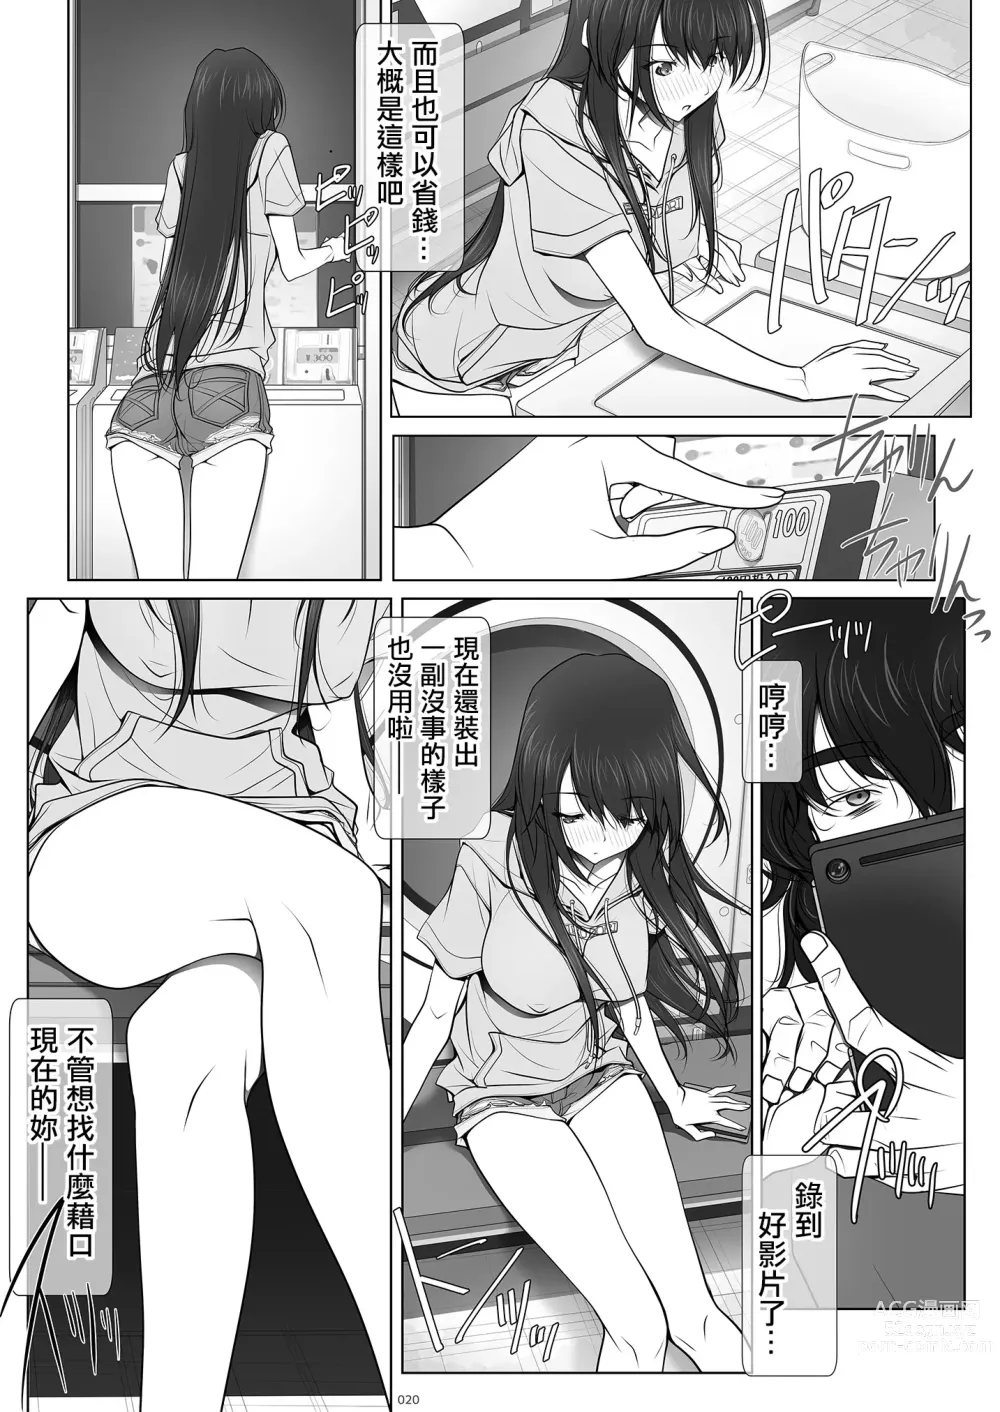 Page 20 of doujinshi 彼女がパンツを穿かない理由｜她不穿內褲的理由